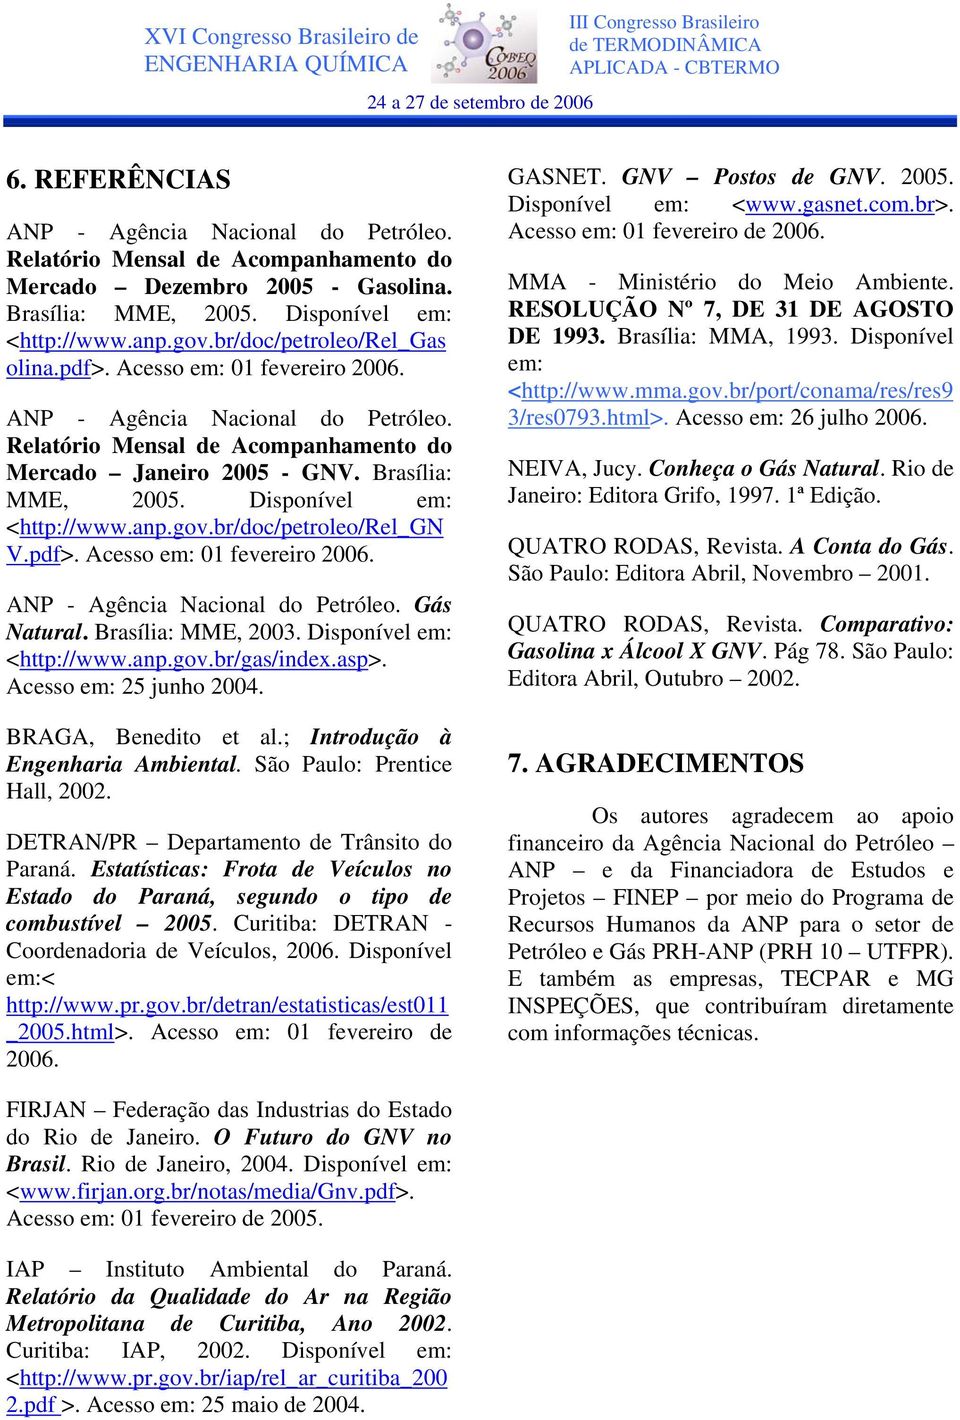 Disponível em: <http://www.anp.gov.br/doc/petroleo/rel_gn V.pdf>. Acesso em: 01 fevereiro 2006. ANP - Agência Nacional do Petróleo. Gás Natural. Brasília: MME, 2003. Disponível em: <http://www.anp.gov.br/gas/index.